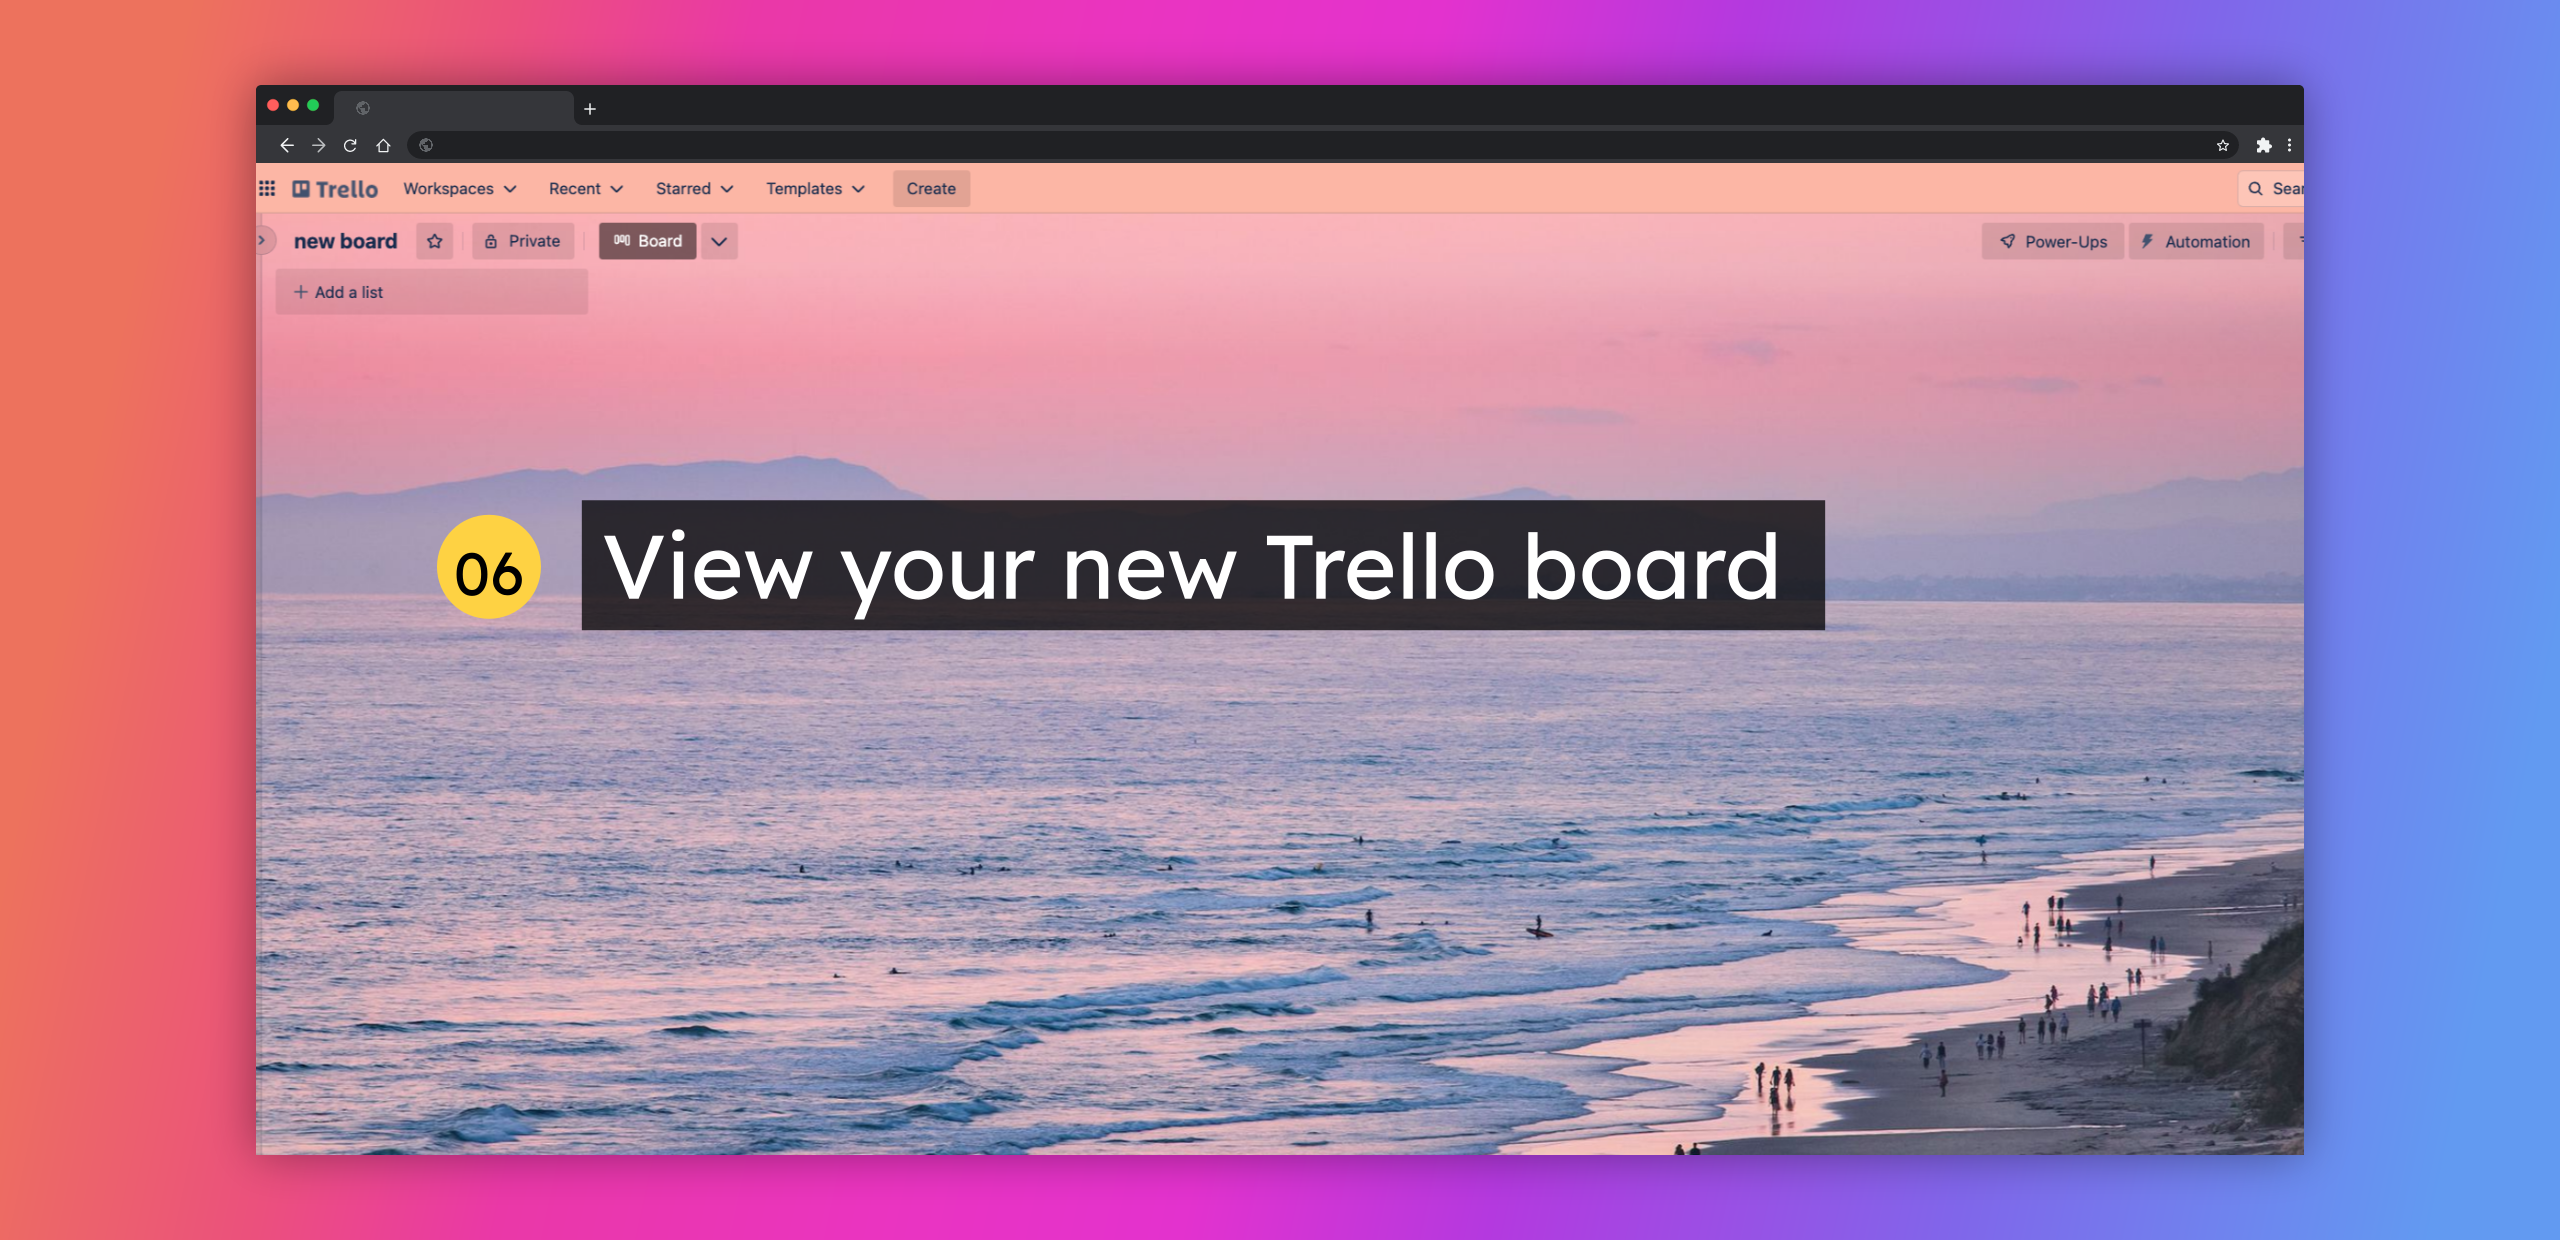 View your new Trello board